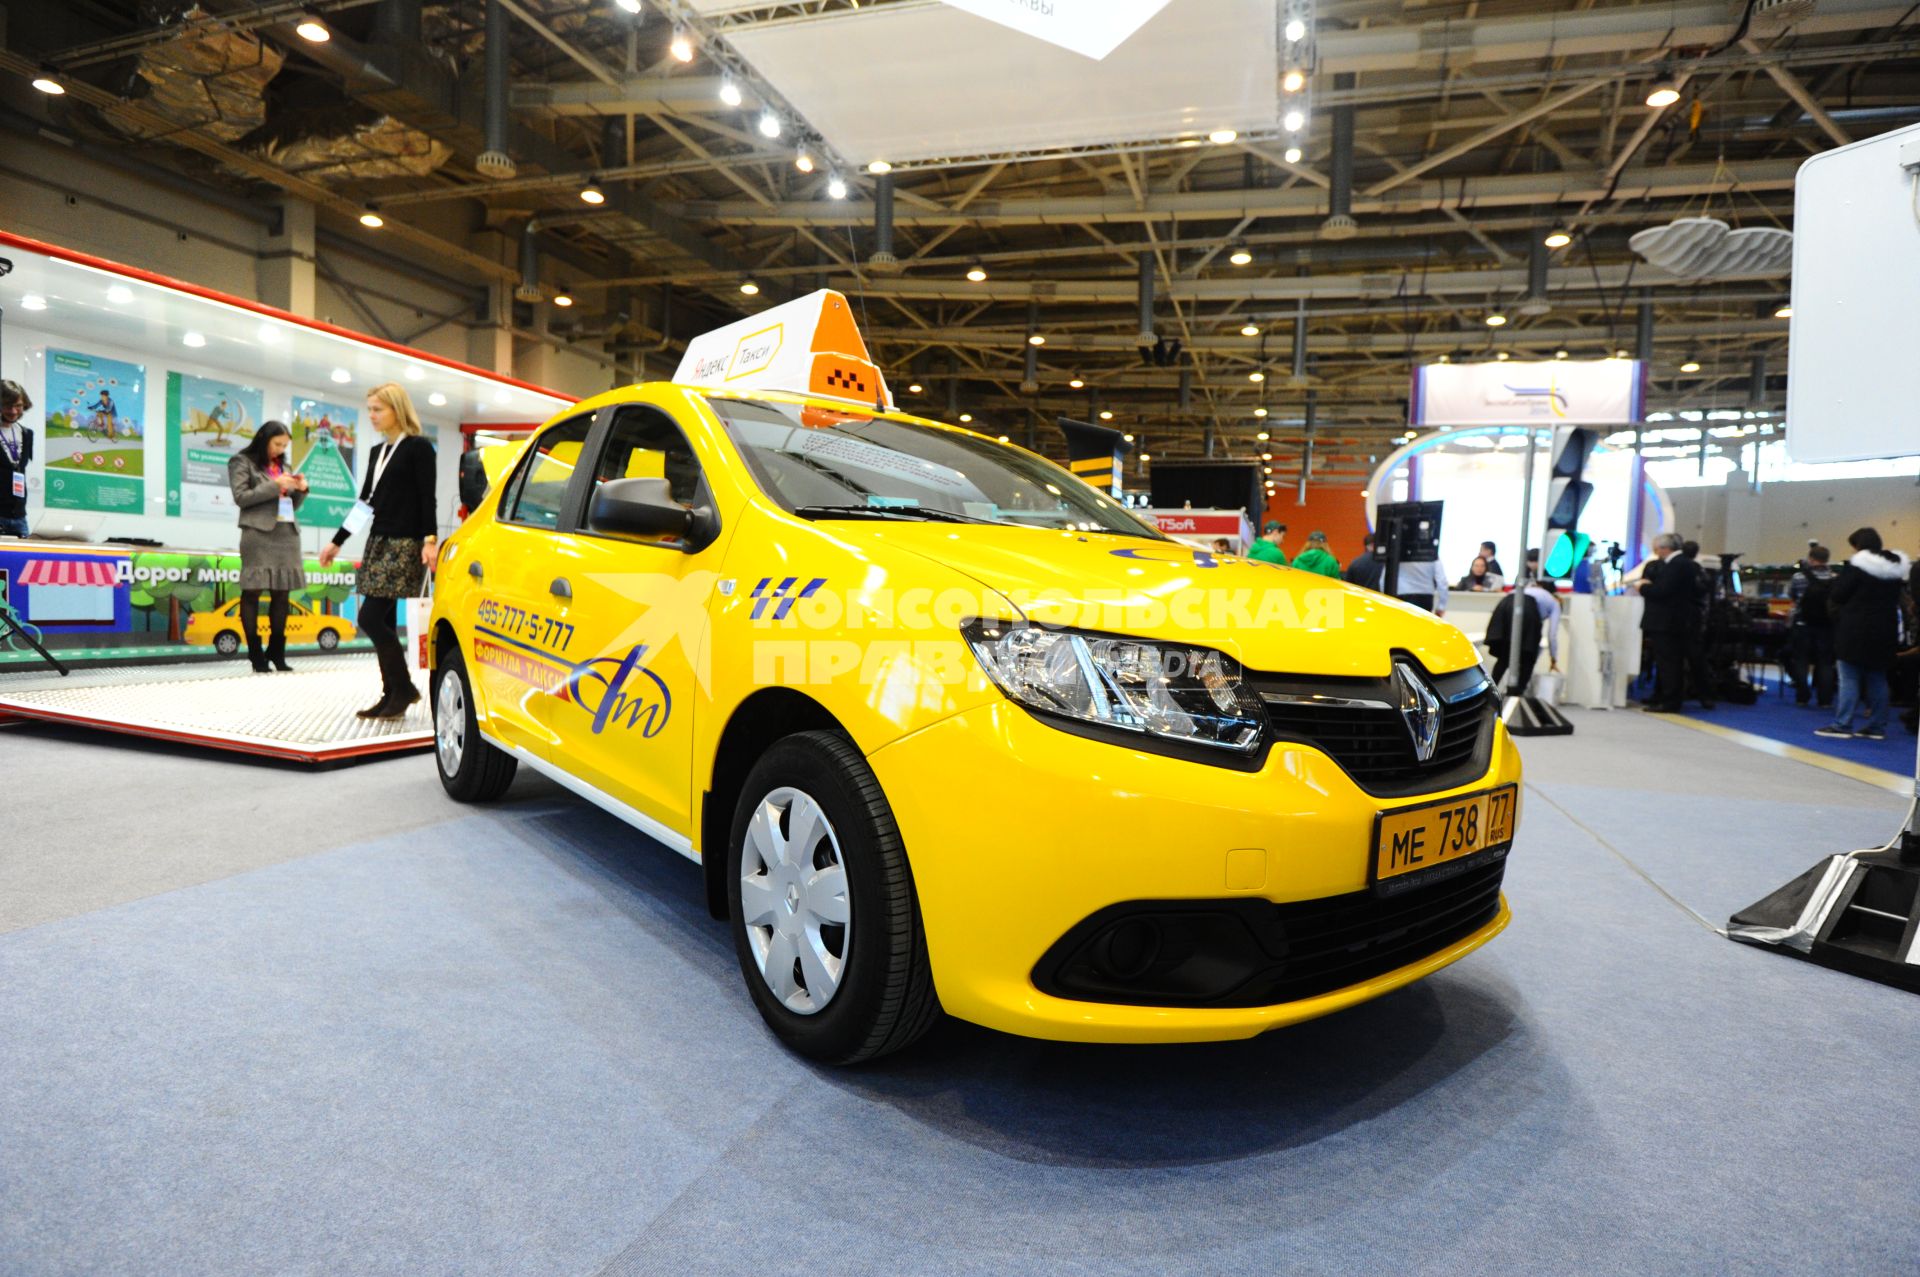 Выставка `ЭкспоСитиТранс 2014` в Москве.   На снимке:  автомобиль Renault.